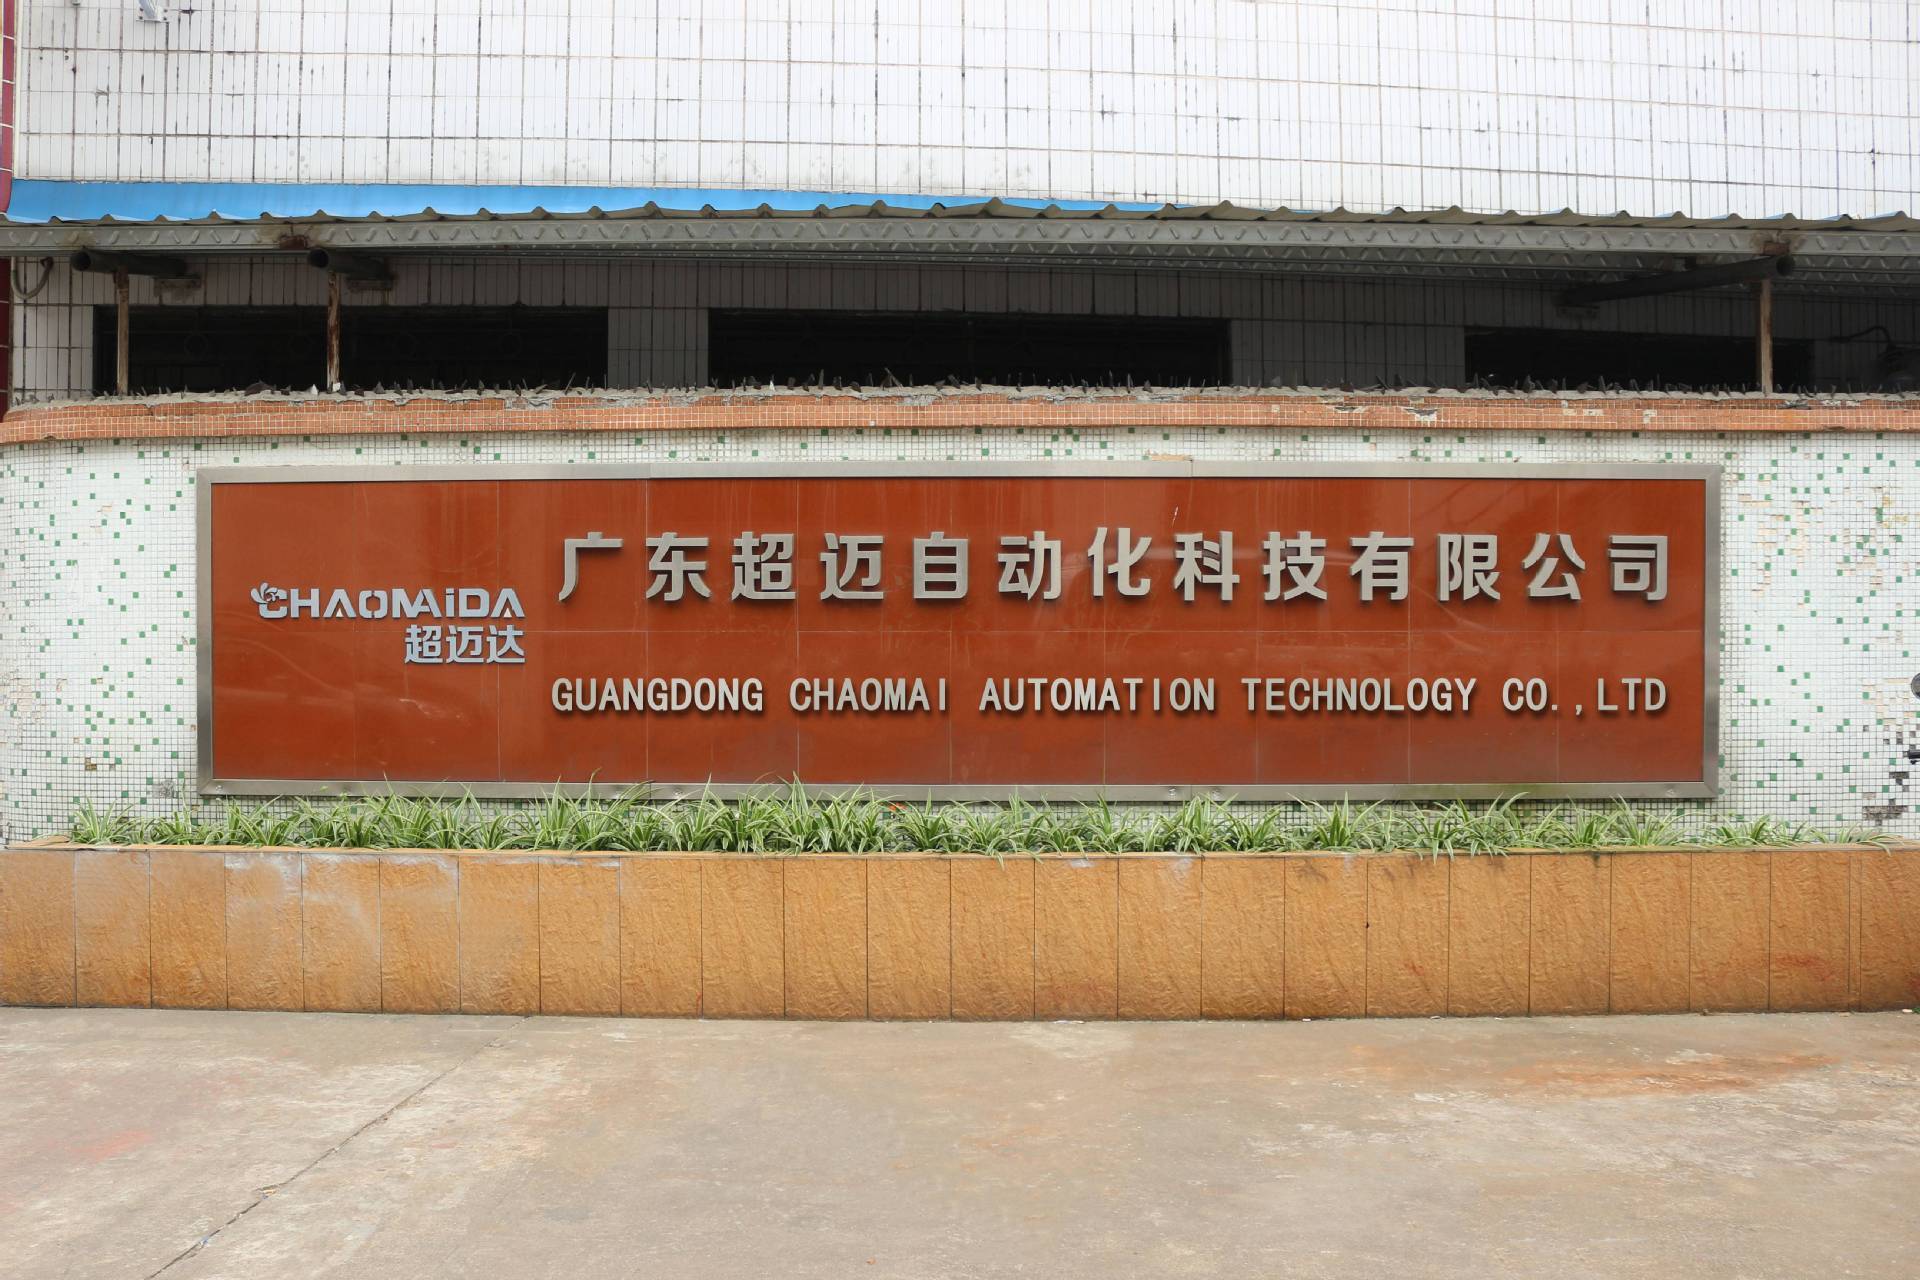     Guangdong Chaomai Automation Technology Co., Ltd